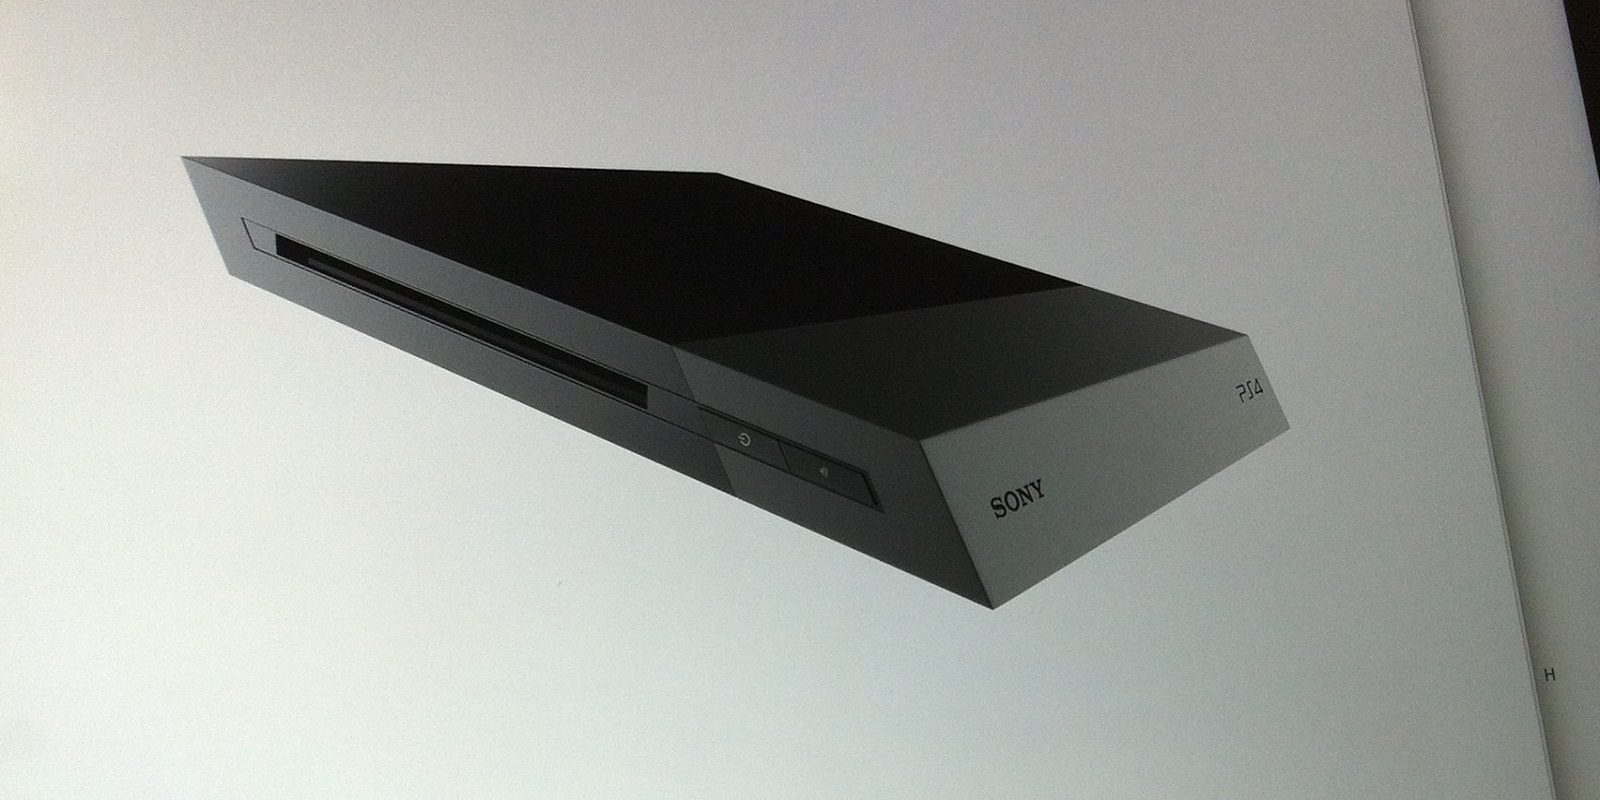 PS4 Slim podría tener un modelo con un disco duro de 1TB